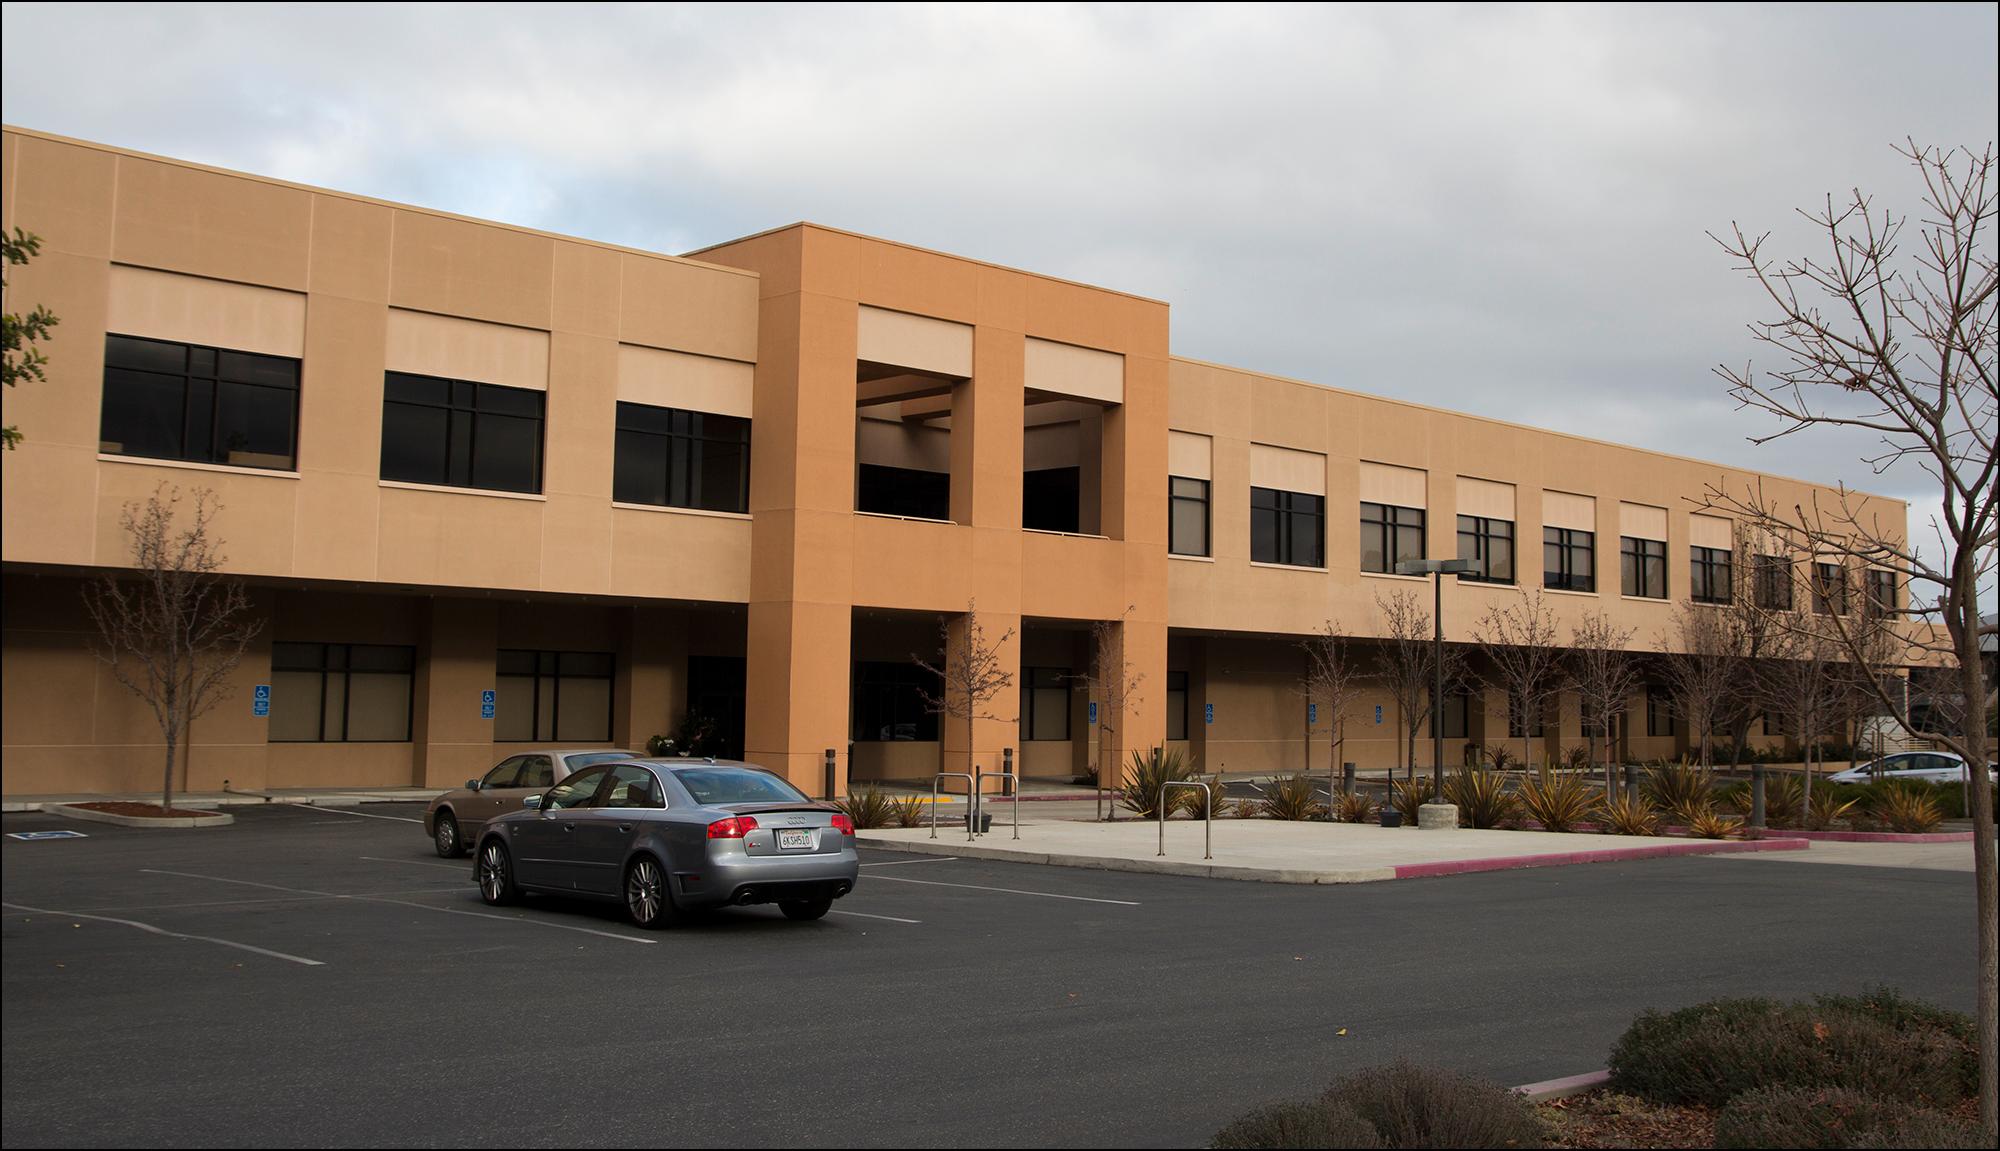 HPs oppkjøp av Autonomy ble en fiasko. Her er HPs kontorer i Palo Alto.Foto: Hardware.no